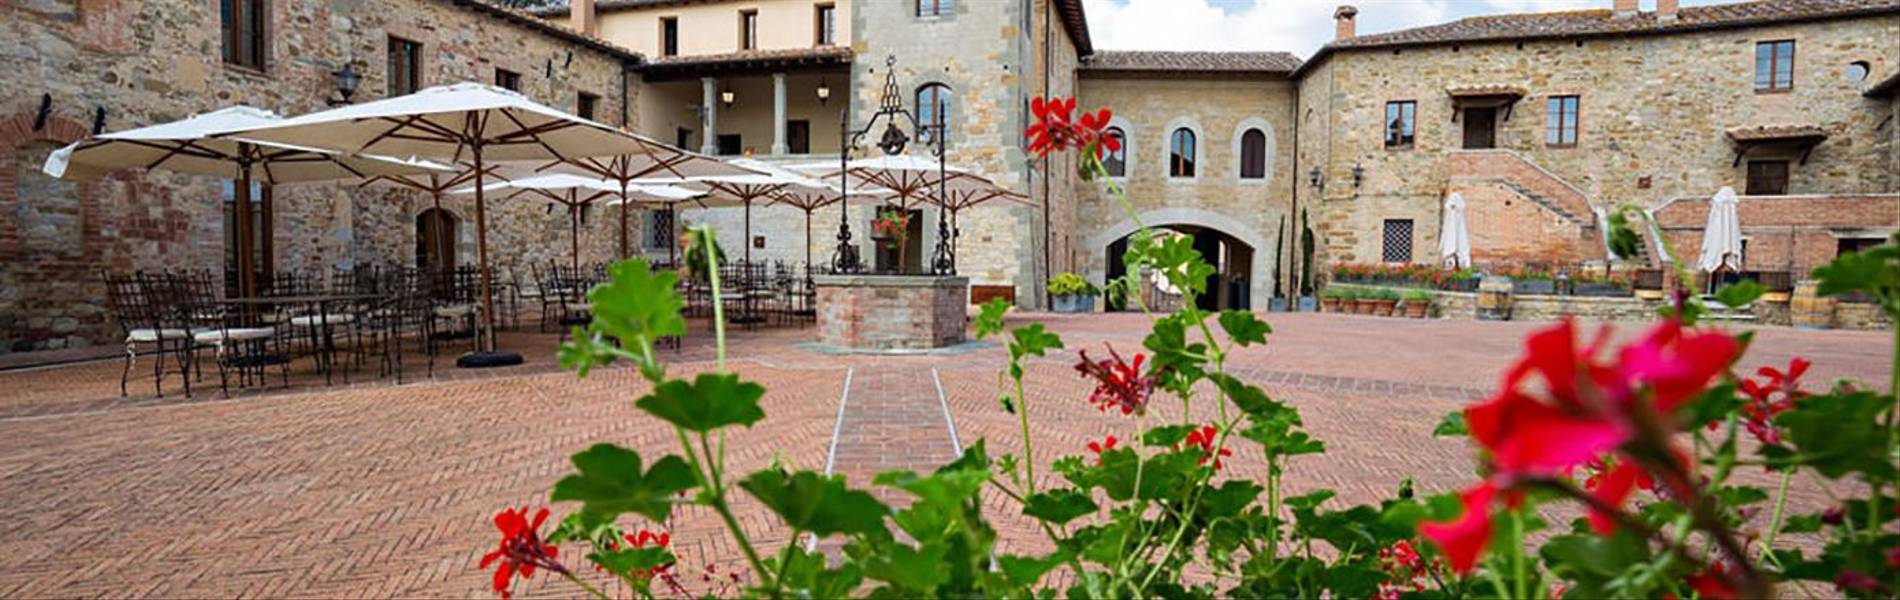 Castel Monastero, Tuscany, Italy (3).jpg